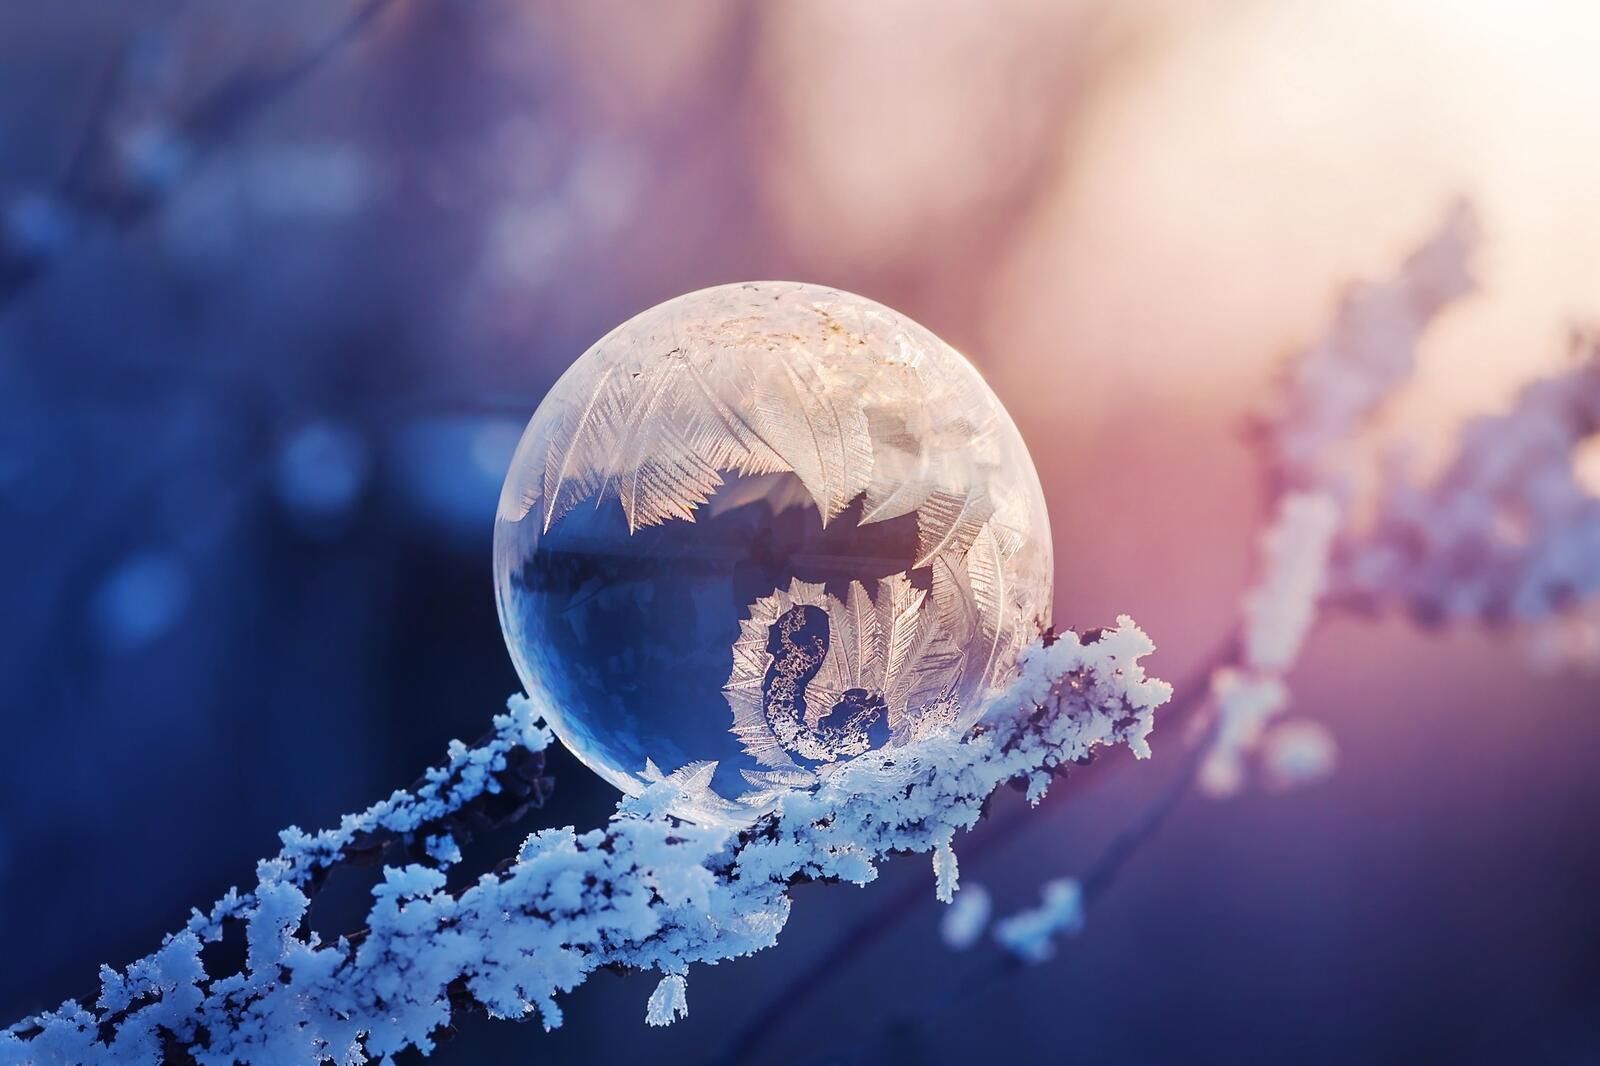 Обои замороженный пузырь зима фотографии на рабочий стол